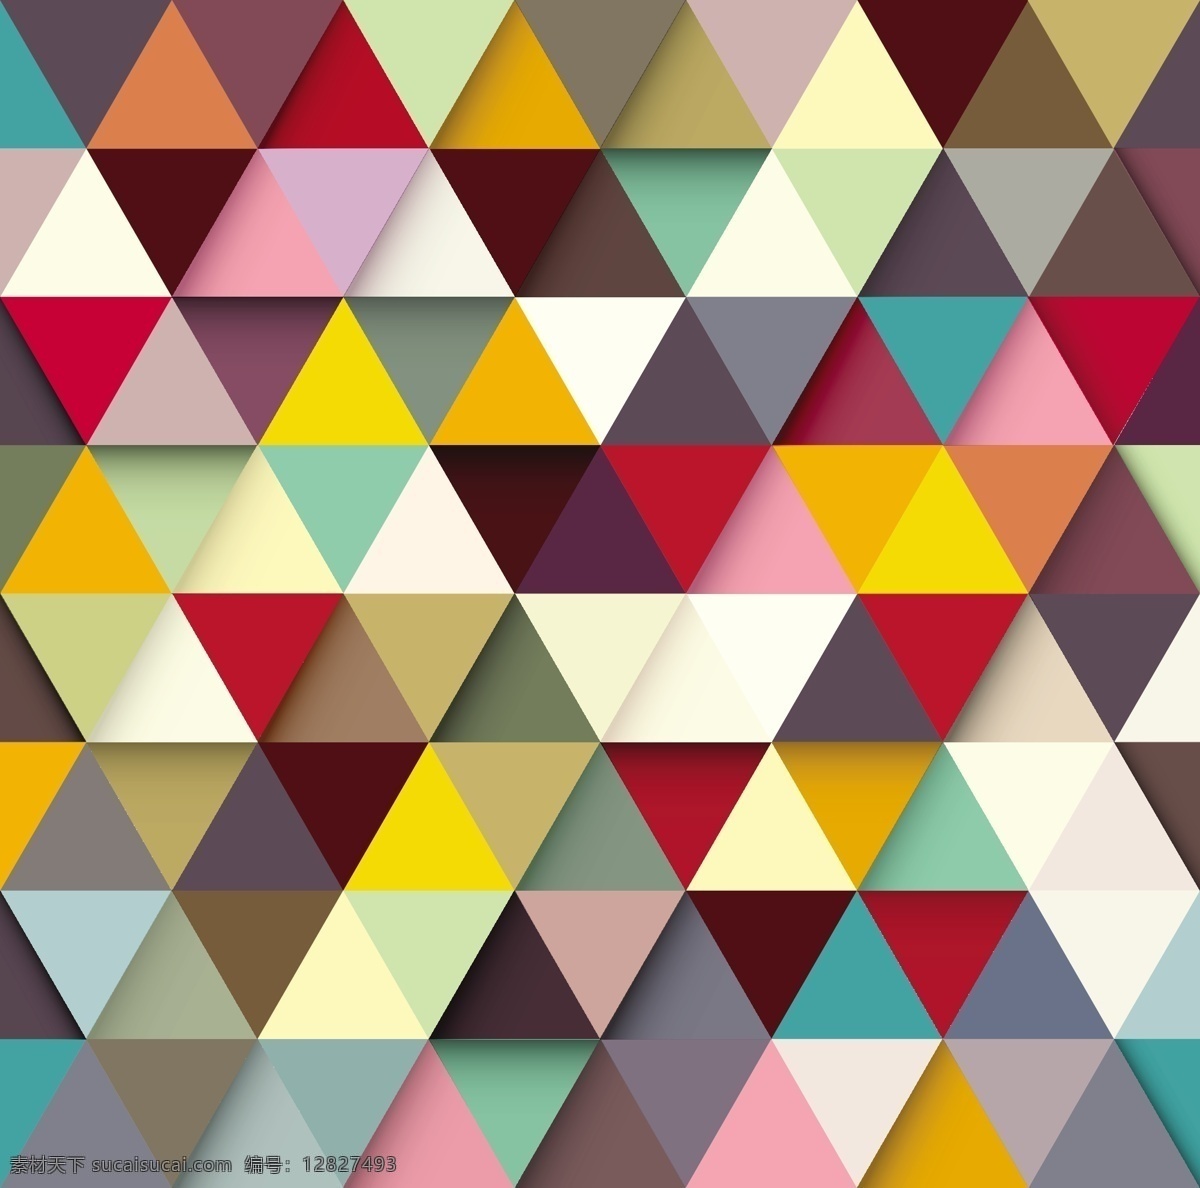 色 三角 谜 矢量 背景 件 模式 拼图 三角形 色彩 矢量素材 钻石 绚丽的色彩 错落有致 矢量图